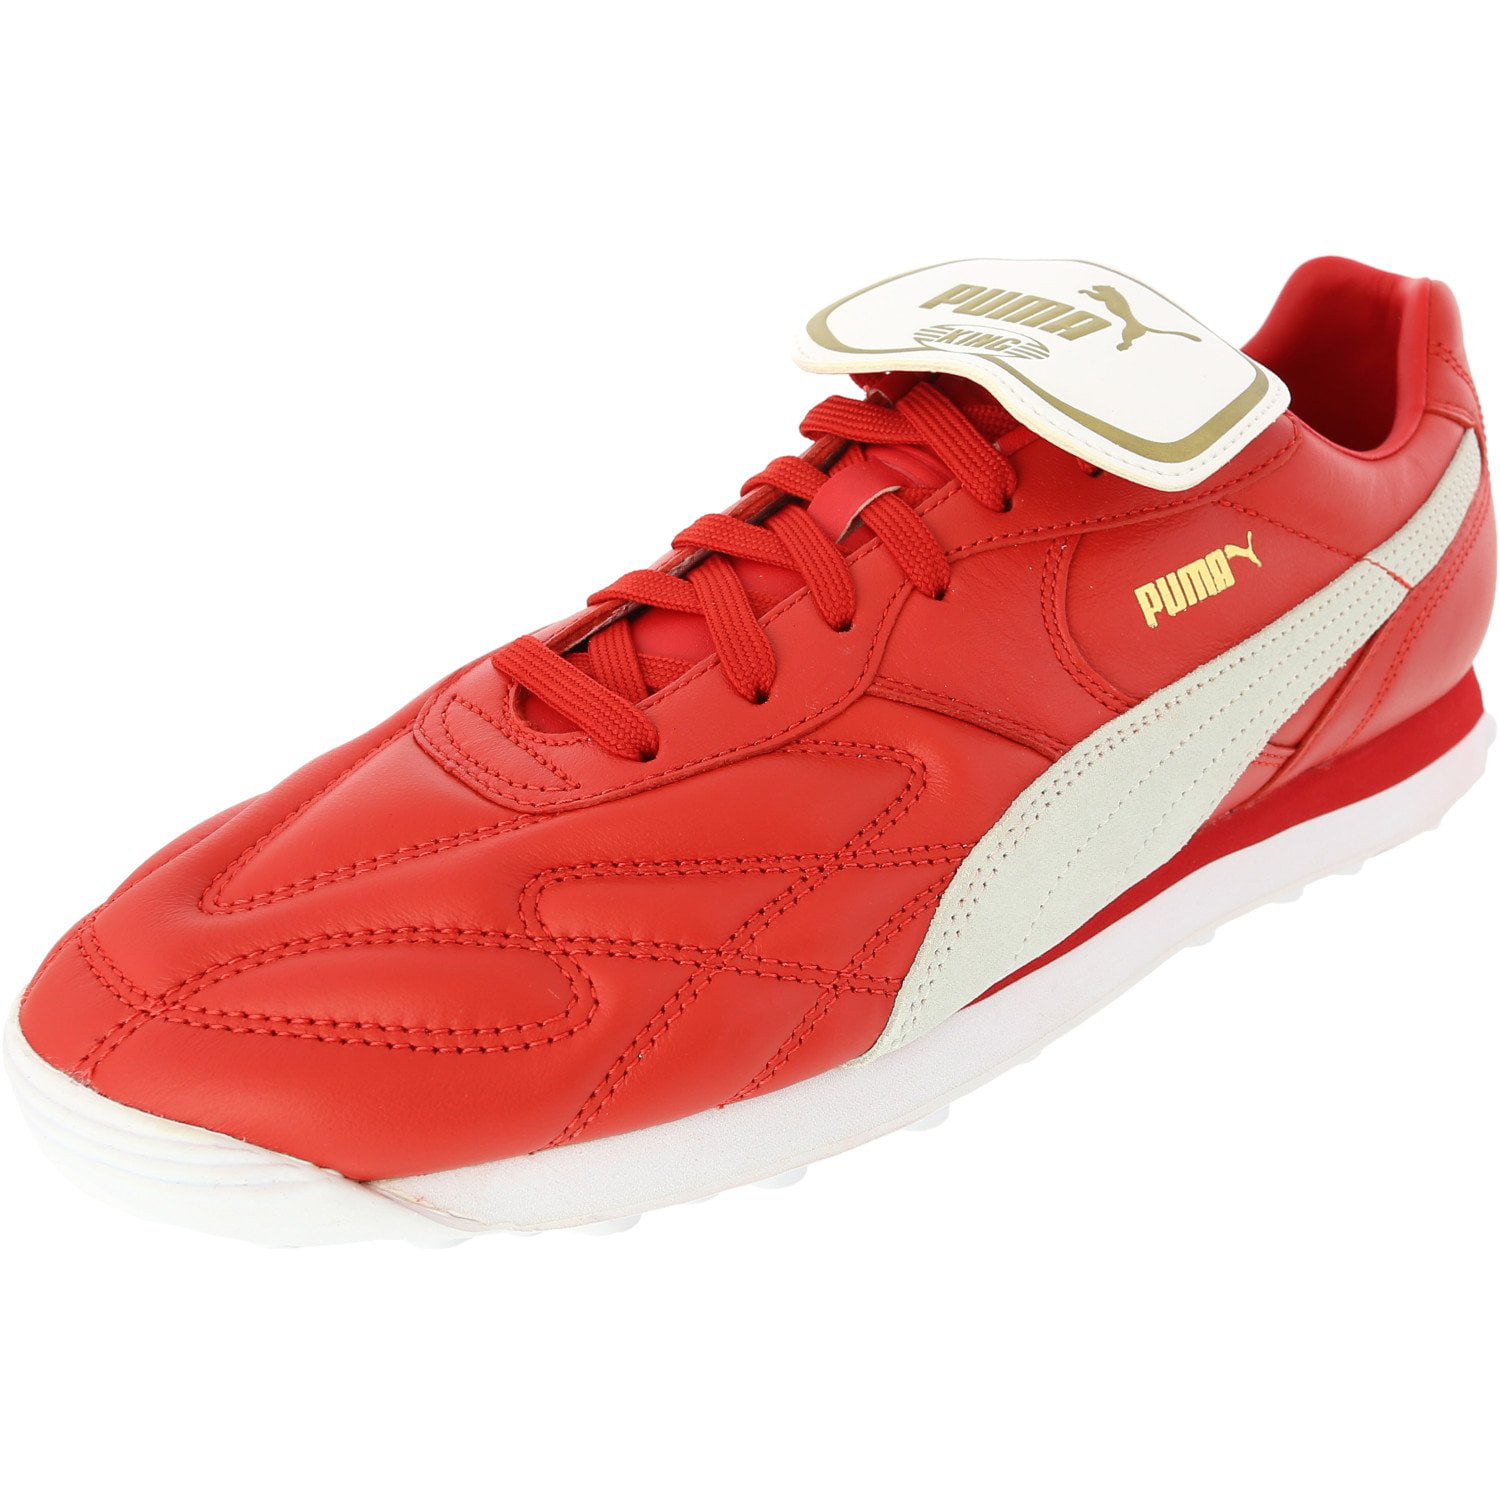 Puma King Avanti Fashion Sneaker - - Puma Red White - Walmart.com